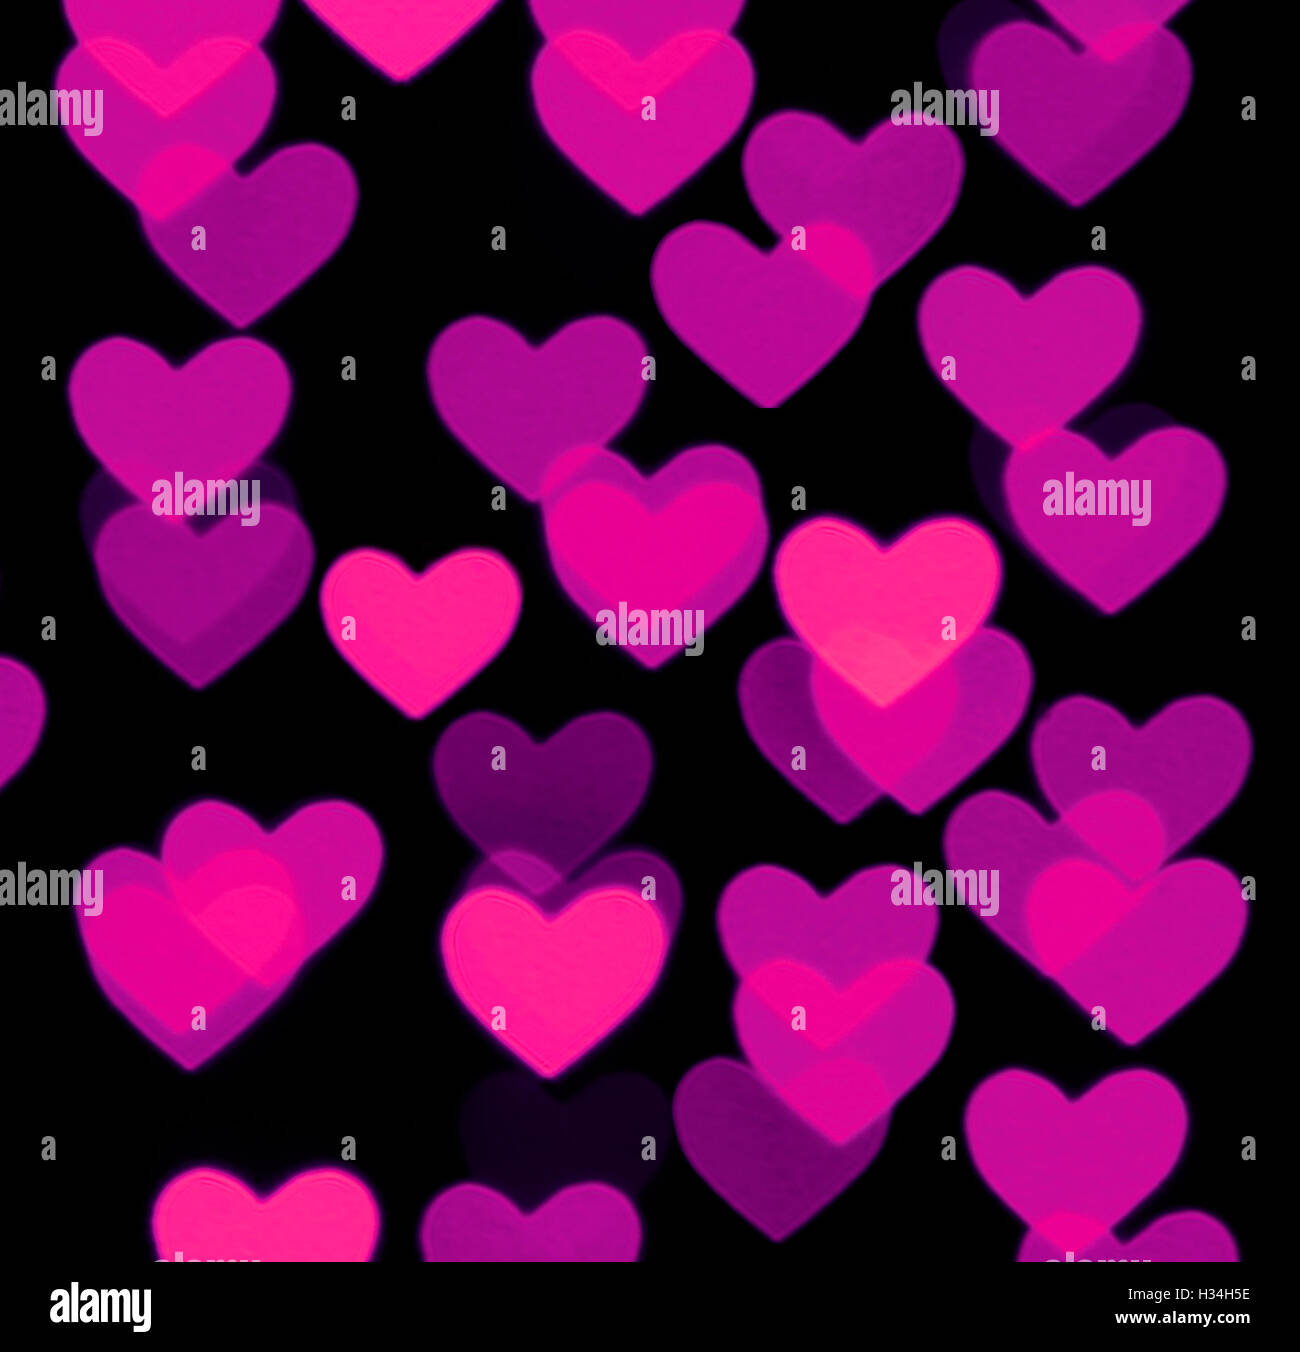 Herz-Bokeh Hintergrund, Foto-verschwommene Objekte, pink auf schwarz  Stockfotografie - Alamy